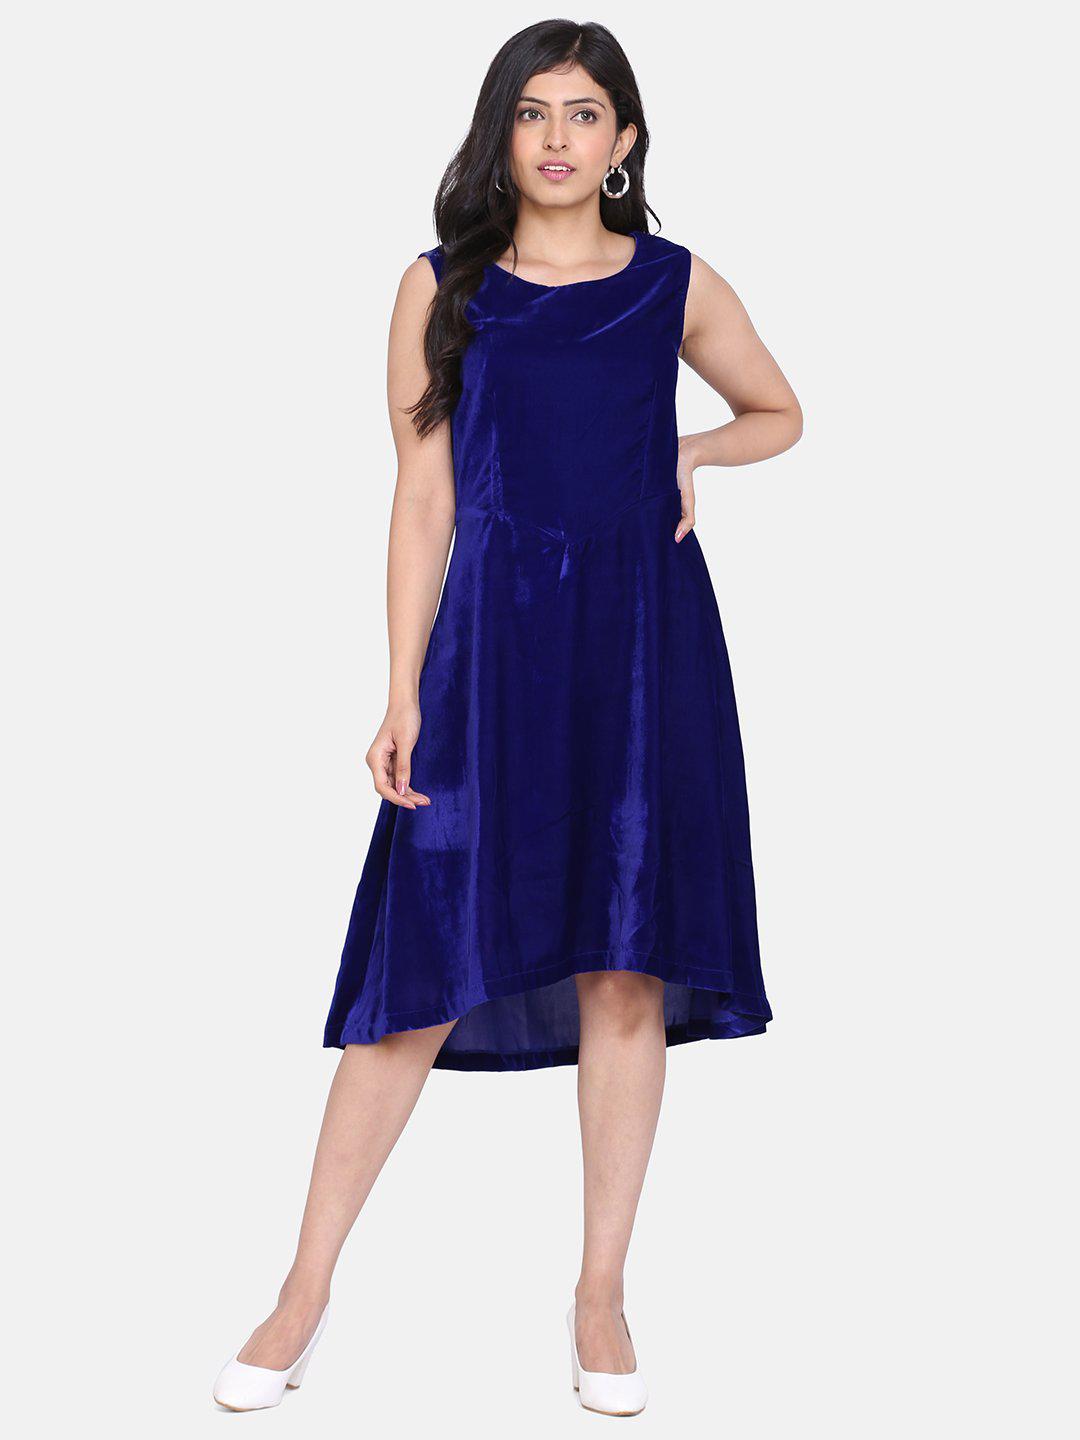 Velvet High Low Evening Dress For women- Royal Blue